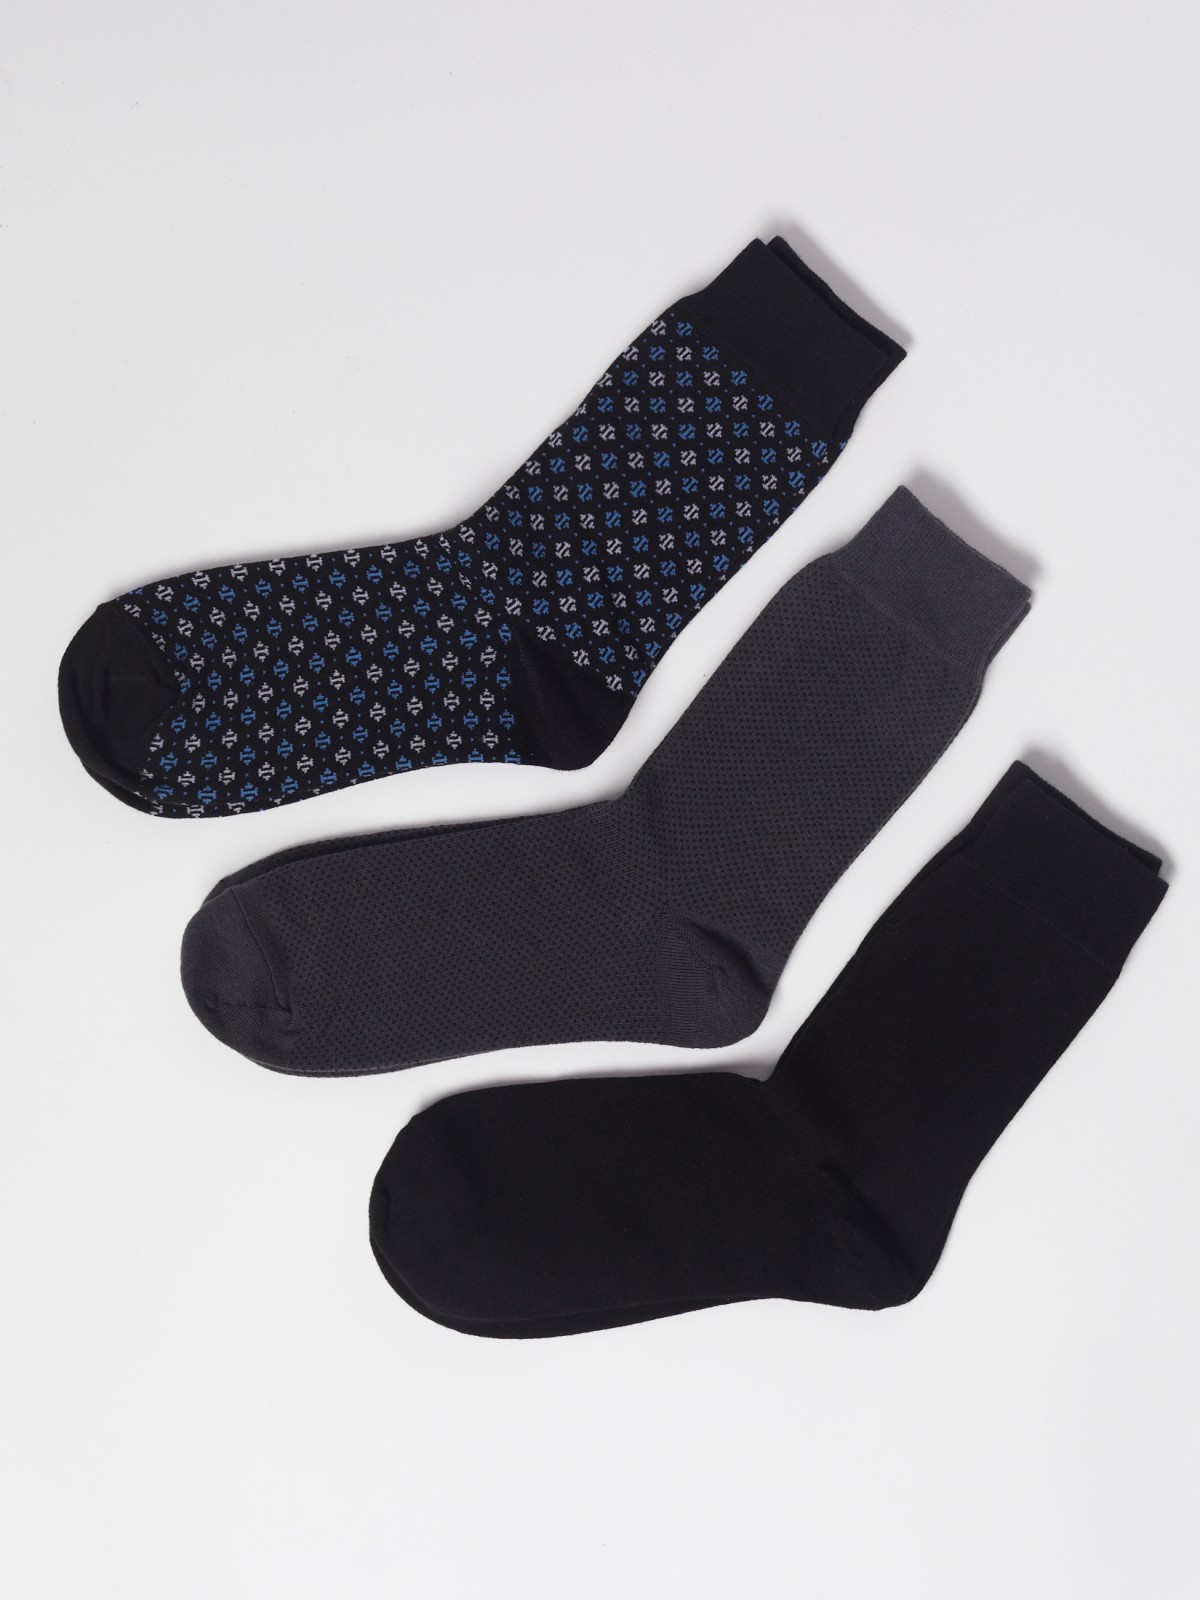 Набор высоких носков (3 пары в комплекте) zolla 01311995G075, цвет мультицвет, размер 25-27